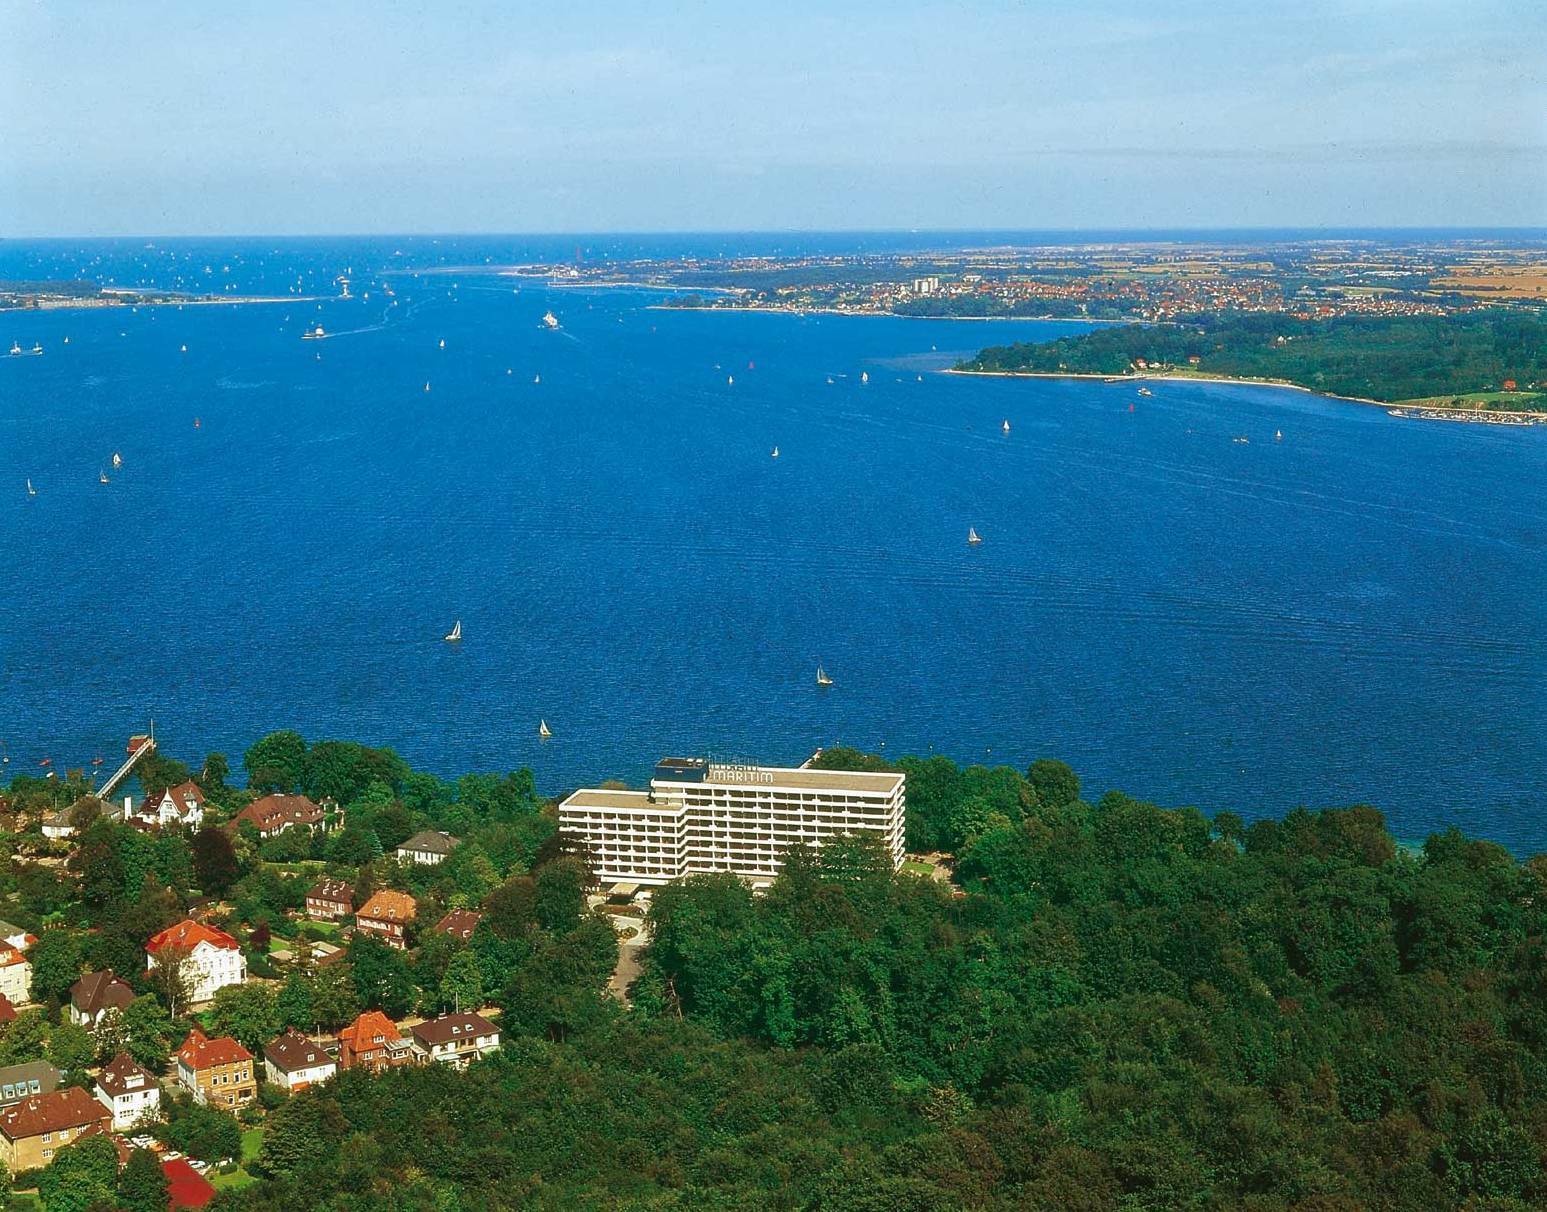 Maritim Hotel Bellevue, Kiel.
